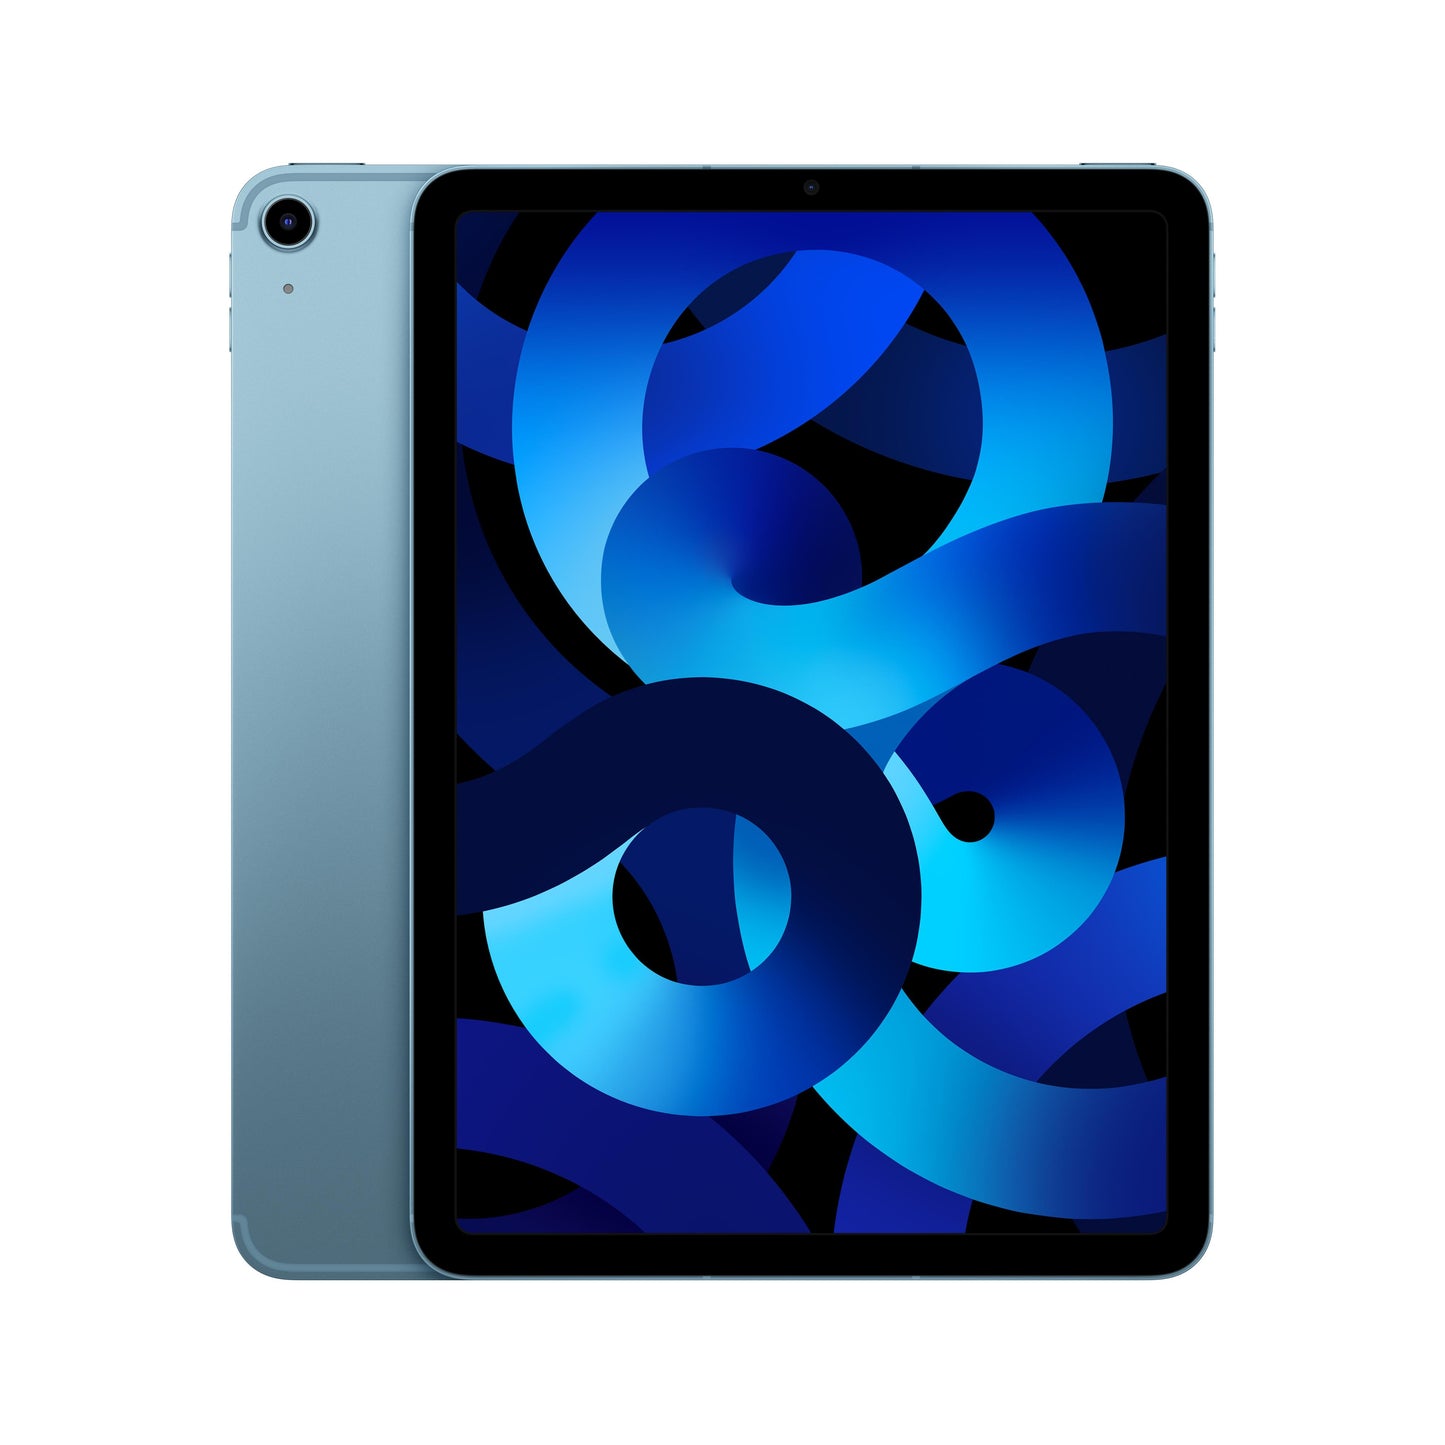 iPad Air Wi-Fi + Cellular 64GB - Blue (5th generation)